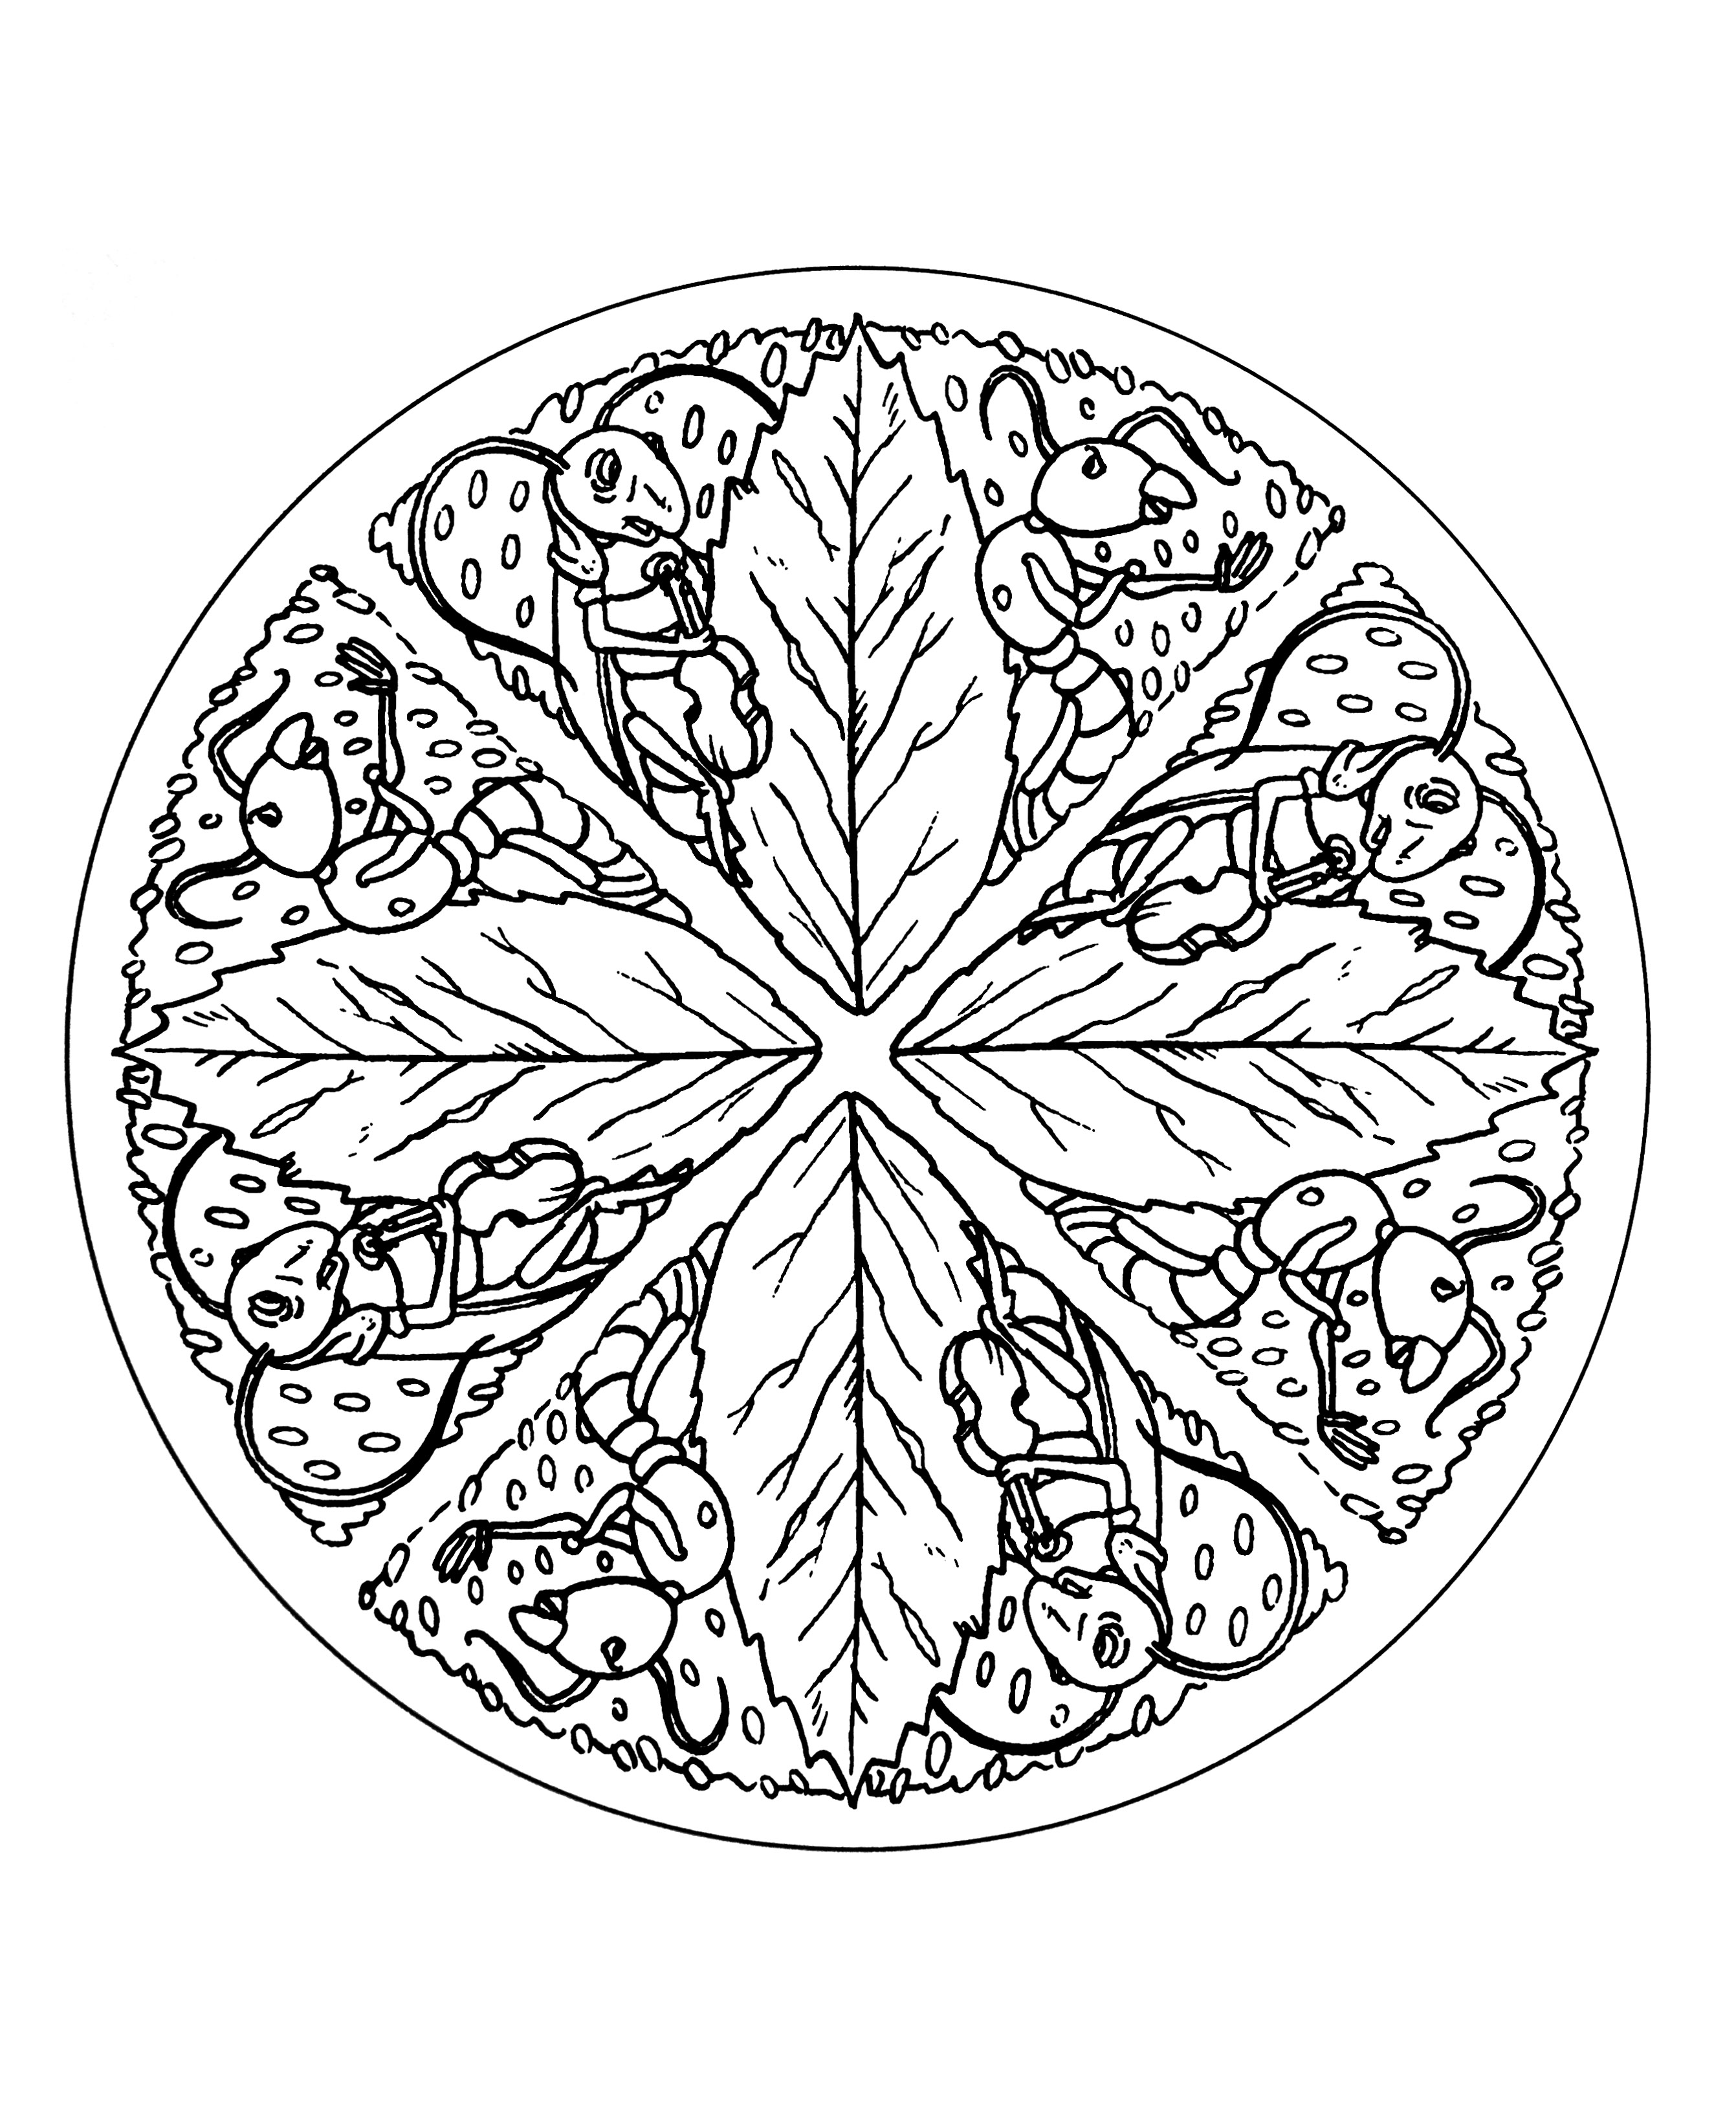 Sehr originelles und symmetrisches Mandala, das mehrere Ameisen sowie verschiedene Blätter darstellt, die eine hübsche Blume bilden.